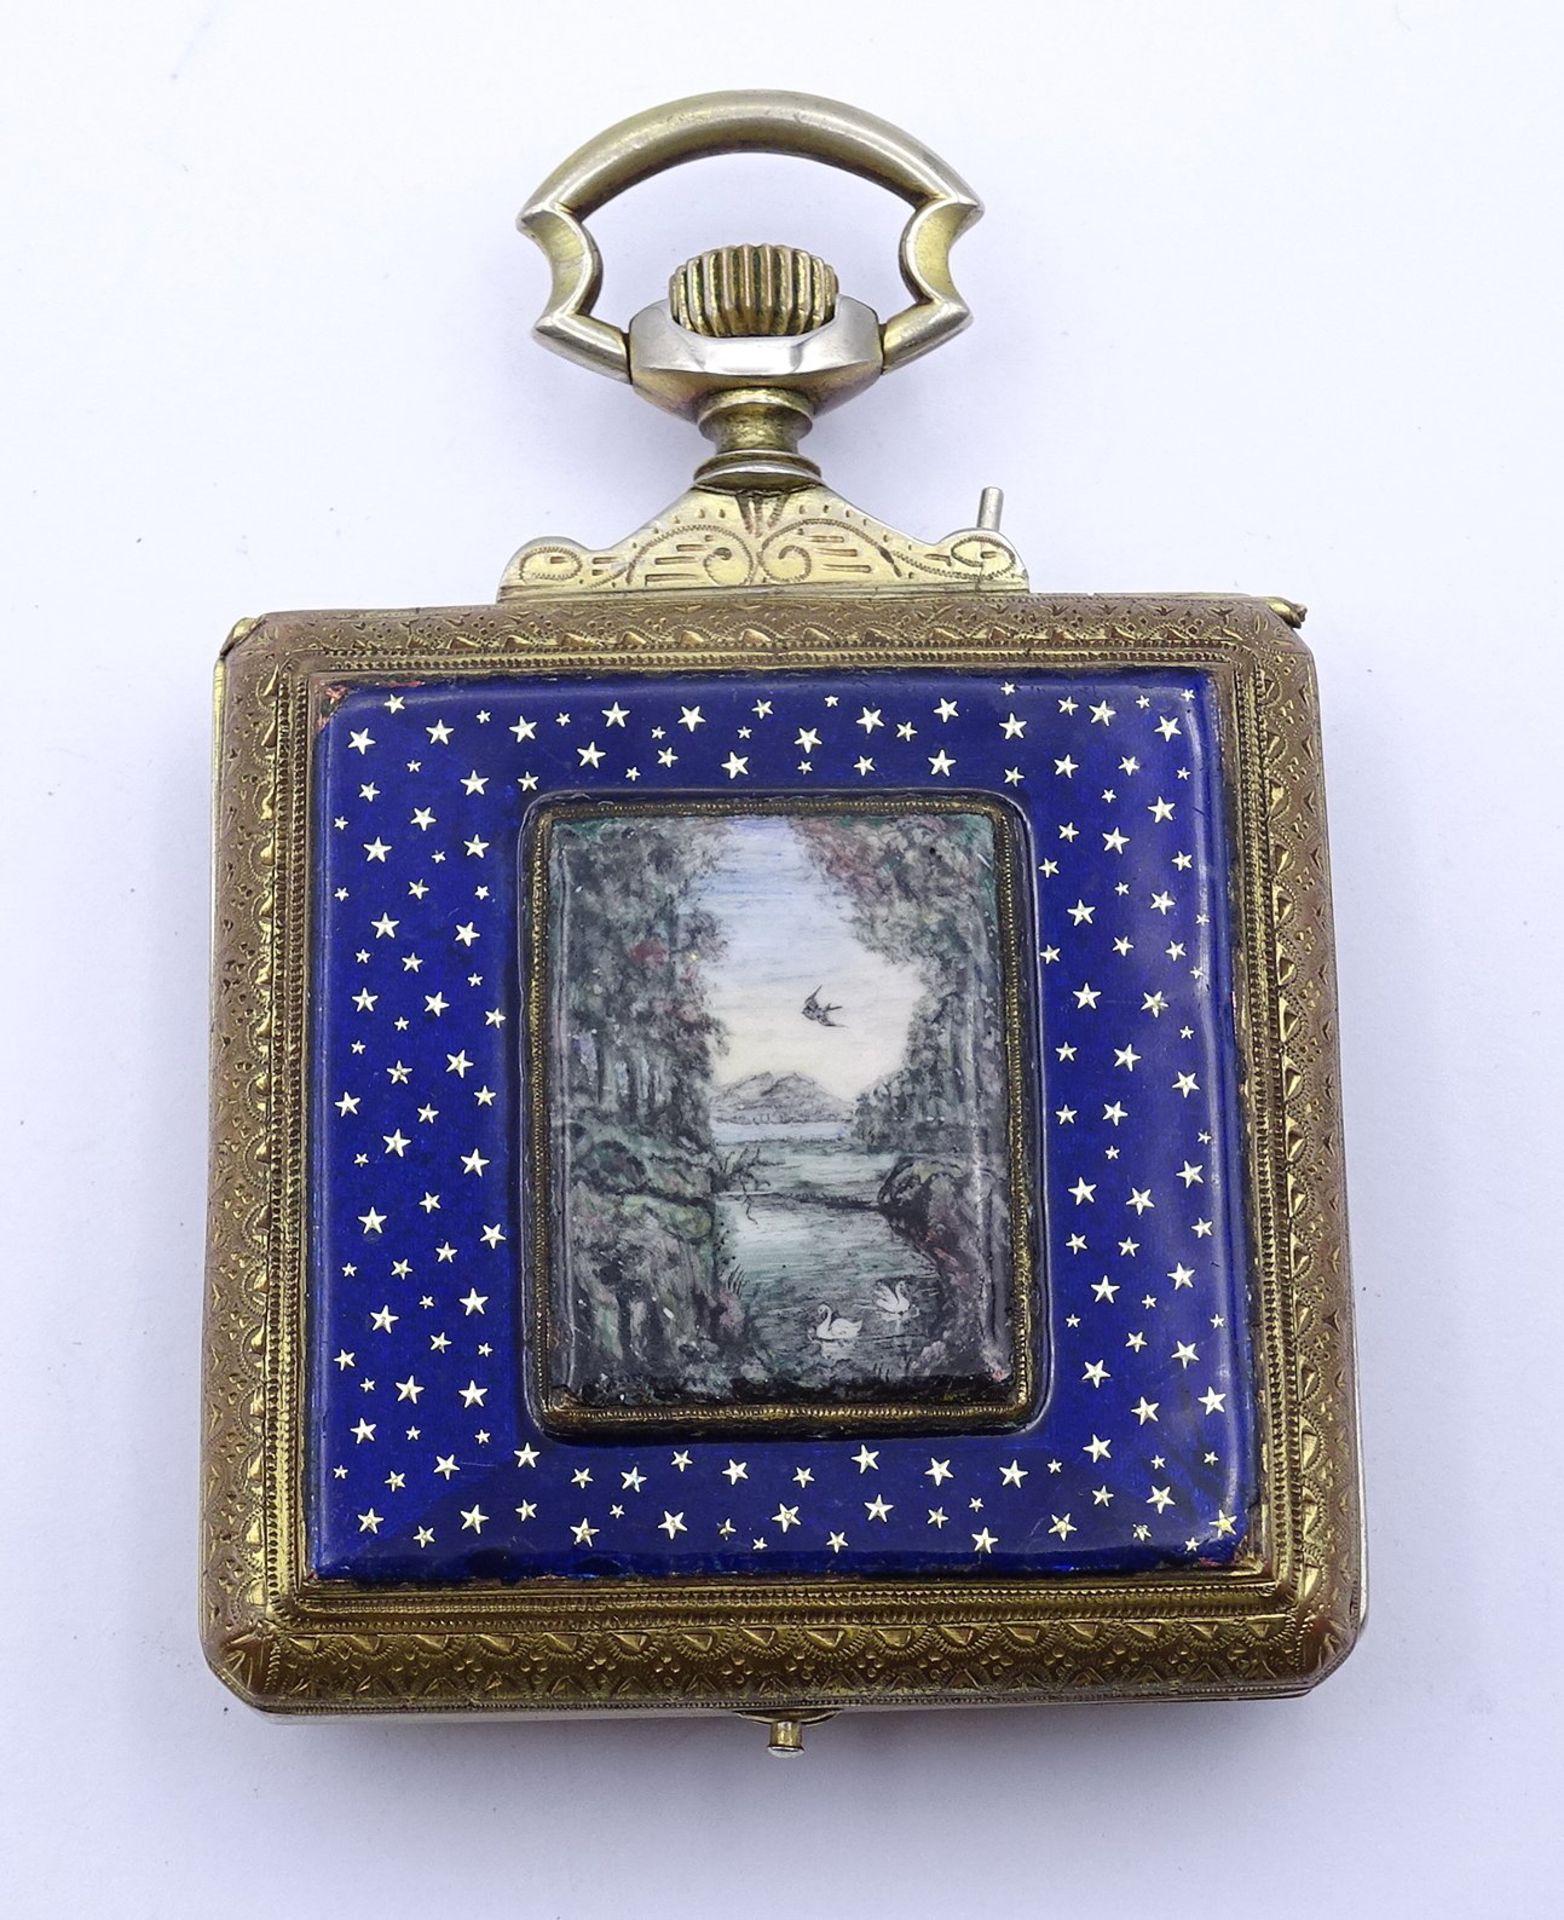 Alte große eckige Taschenuhr mit Emaille Malerei auf Rückendeckel, Sternenbild und Seeansicht, mech - Bild 3 aus 8